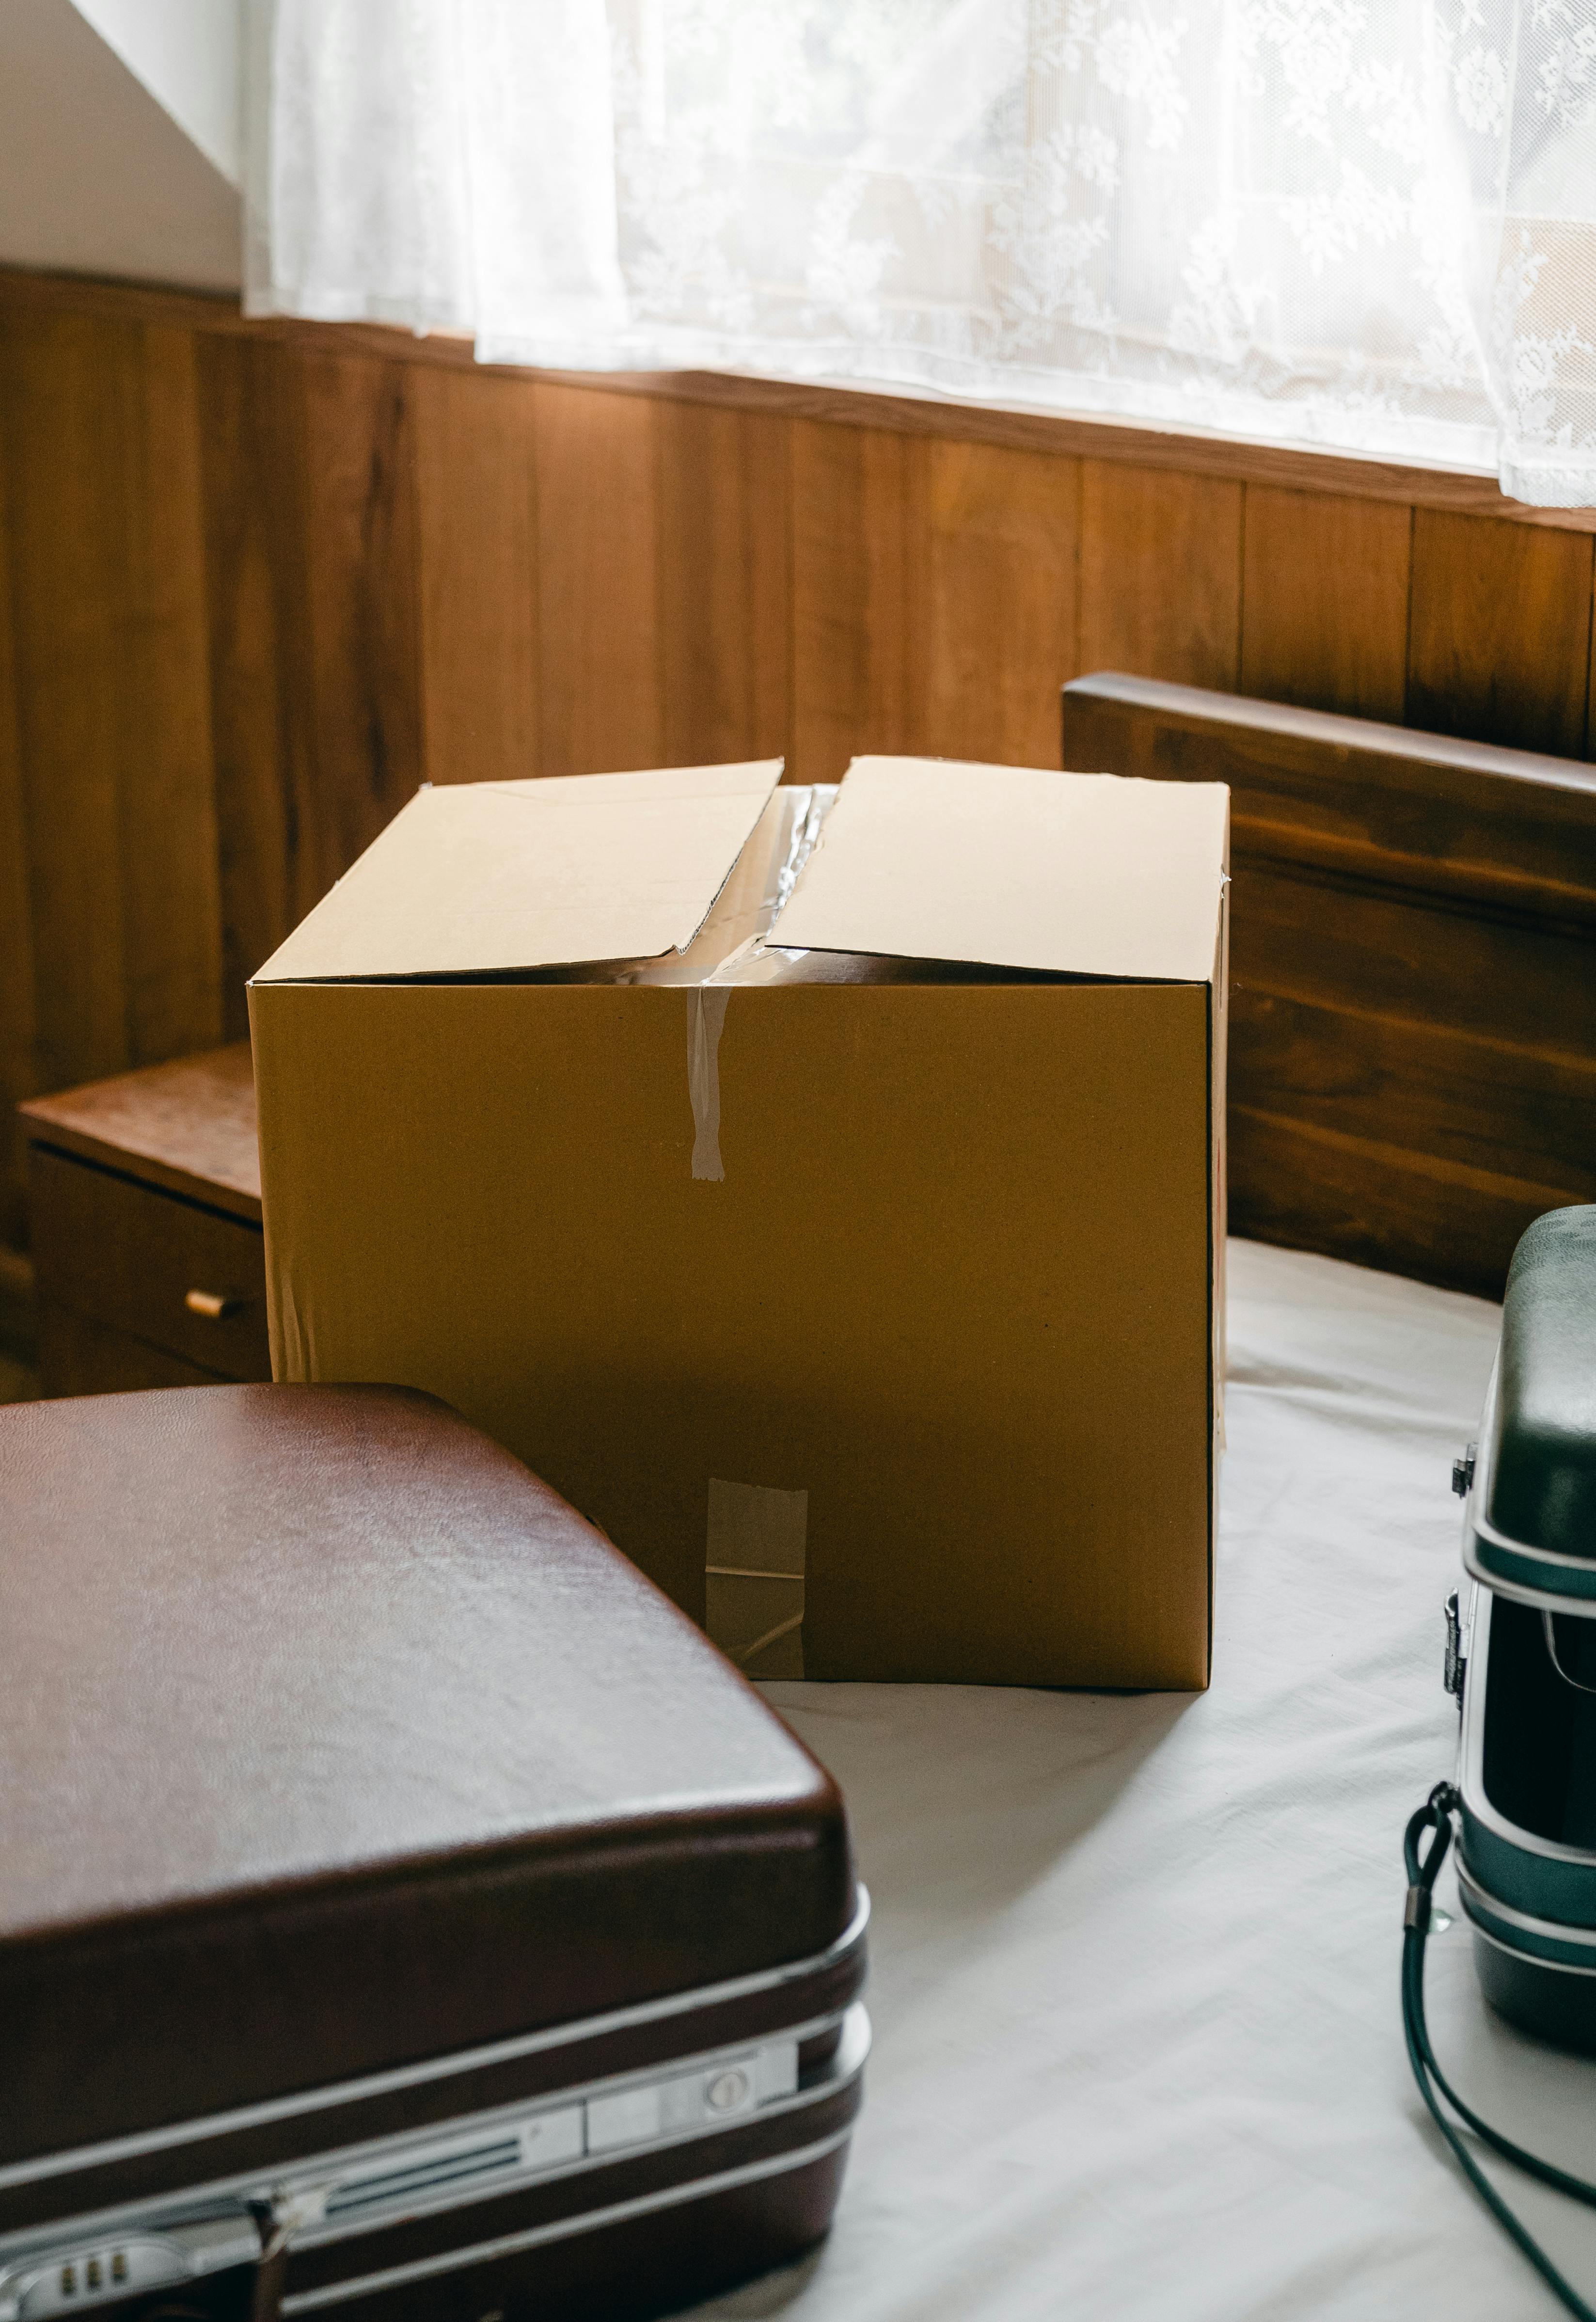 Eine alte Kiste und ein Koffer | Quelle: Pexels